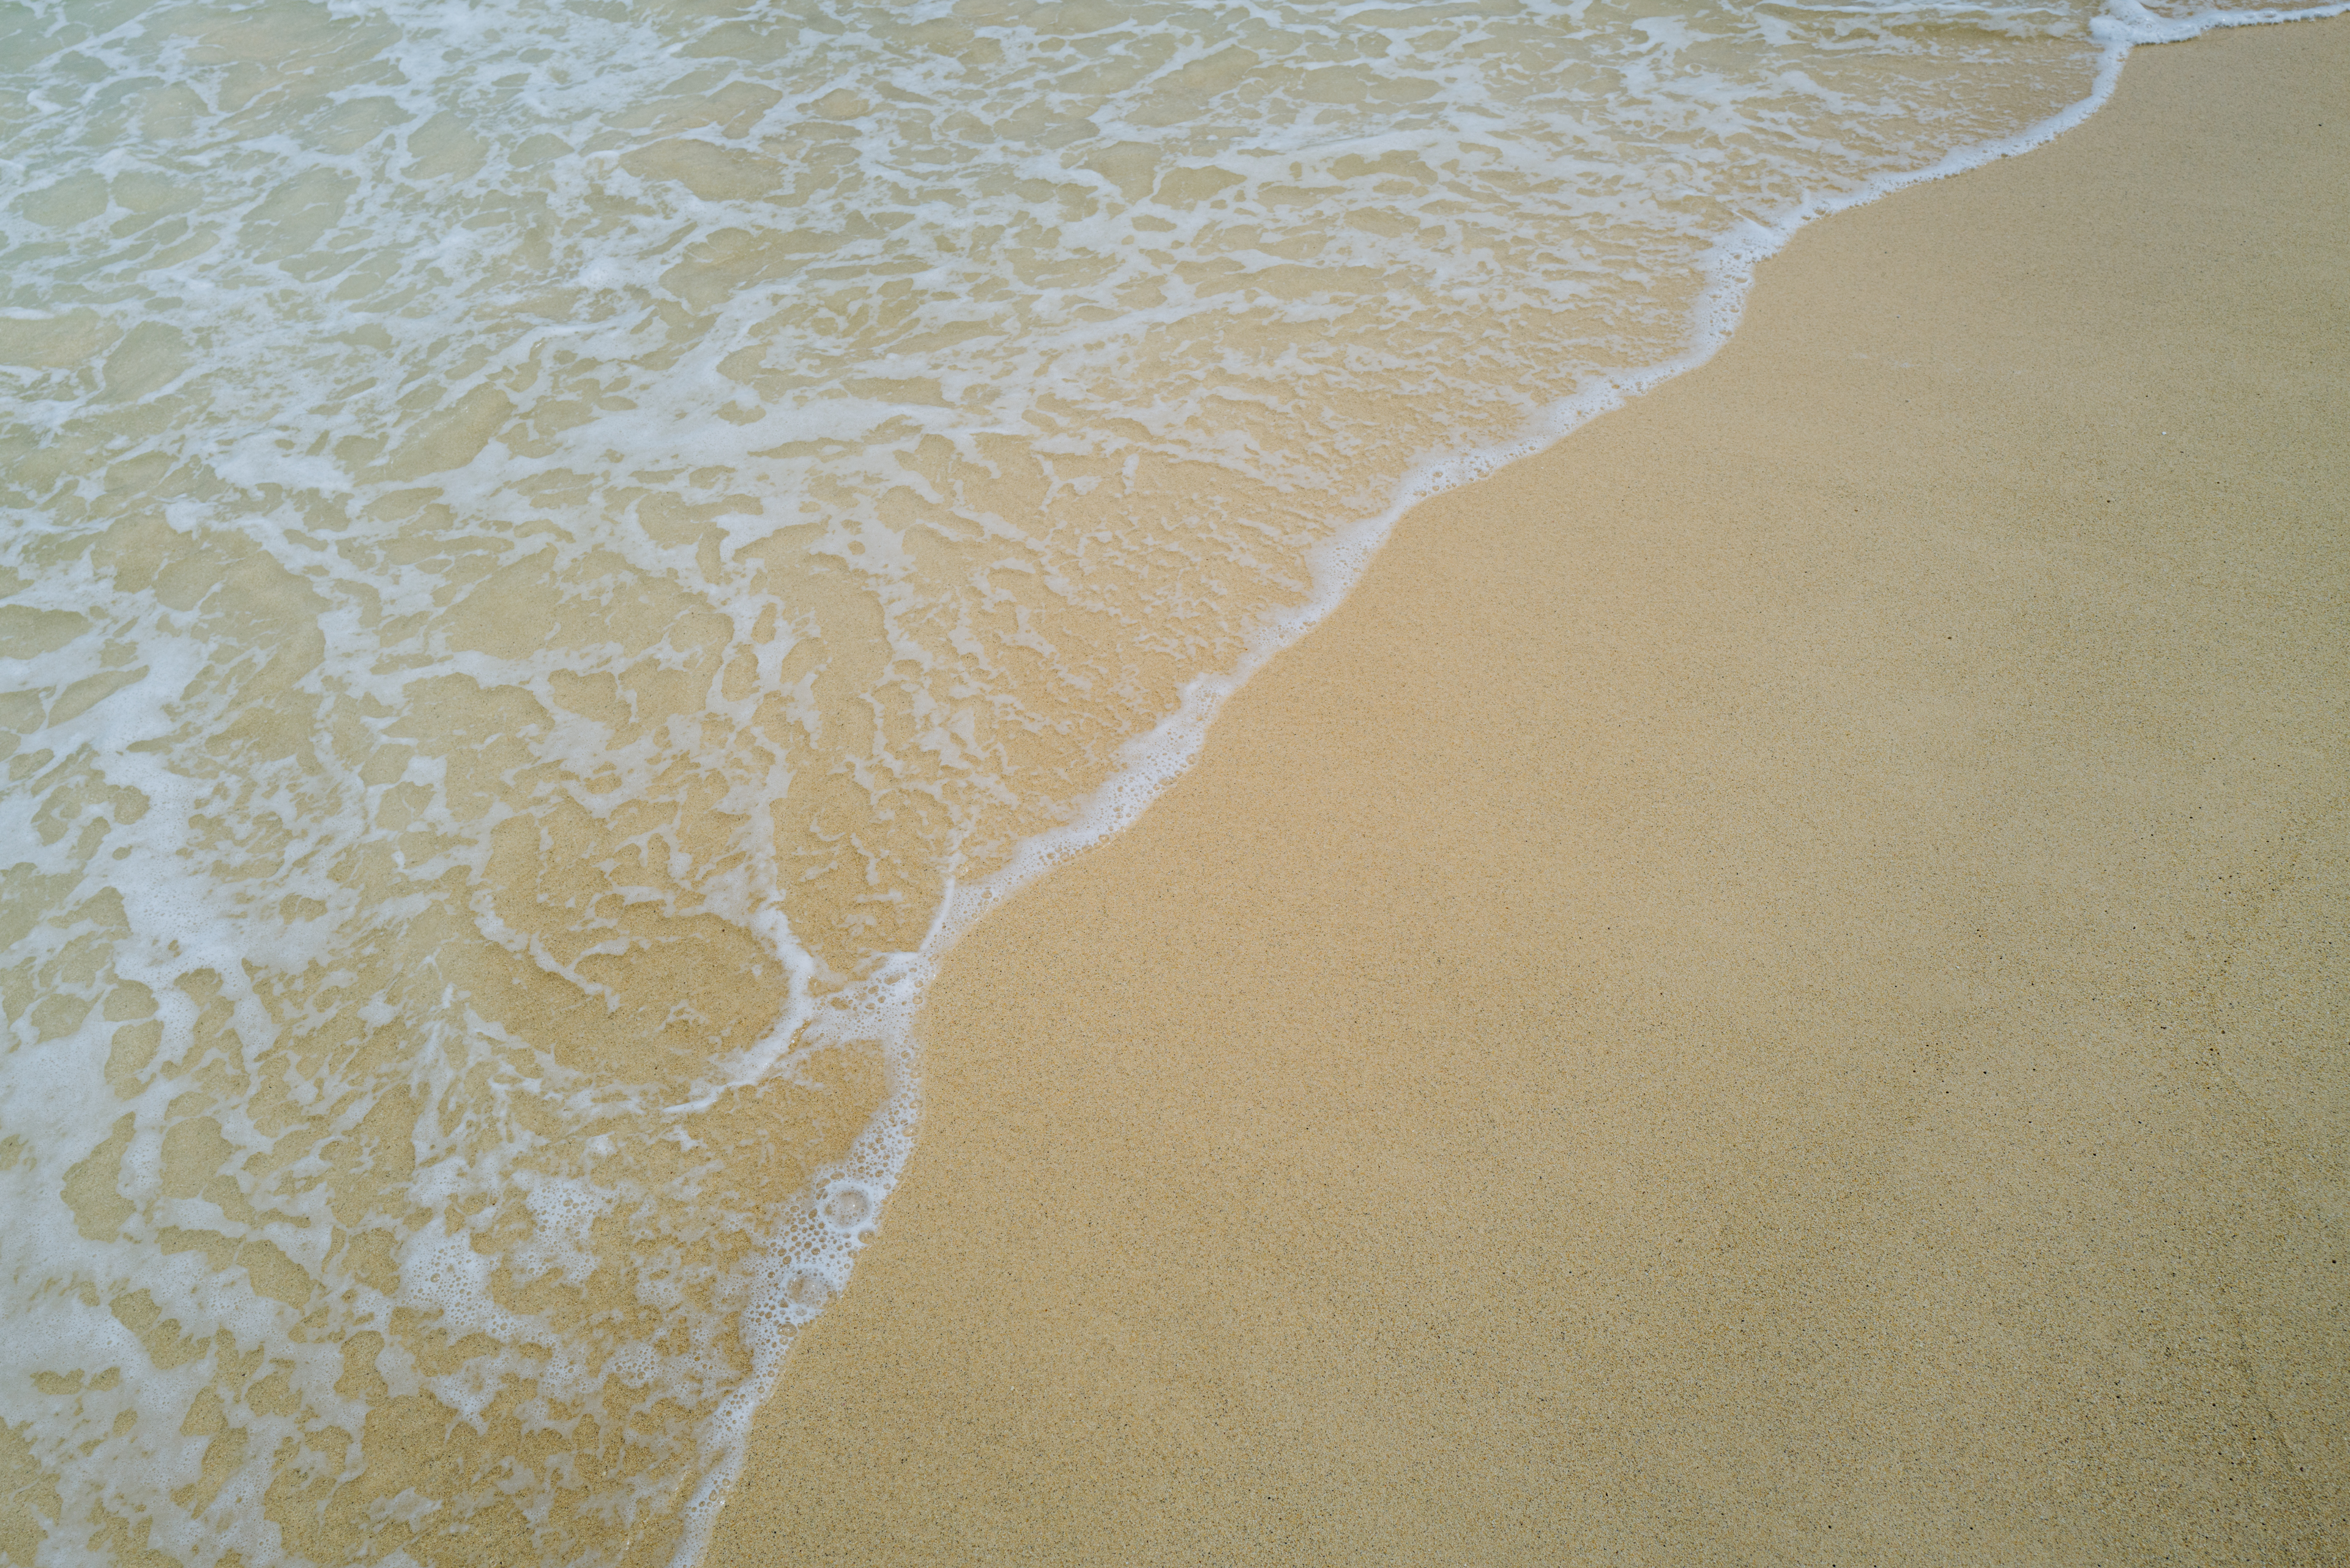 Sand on a beach in Hawaii.